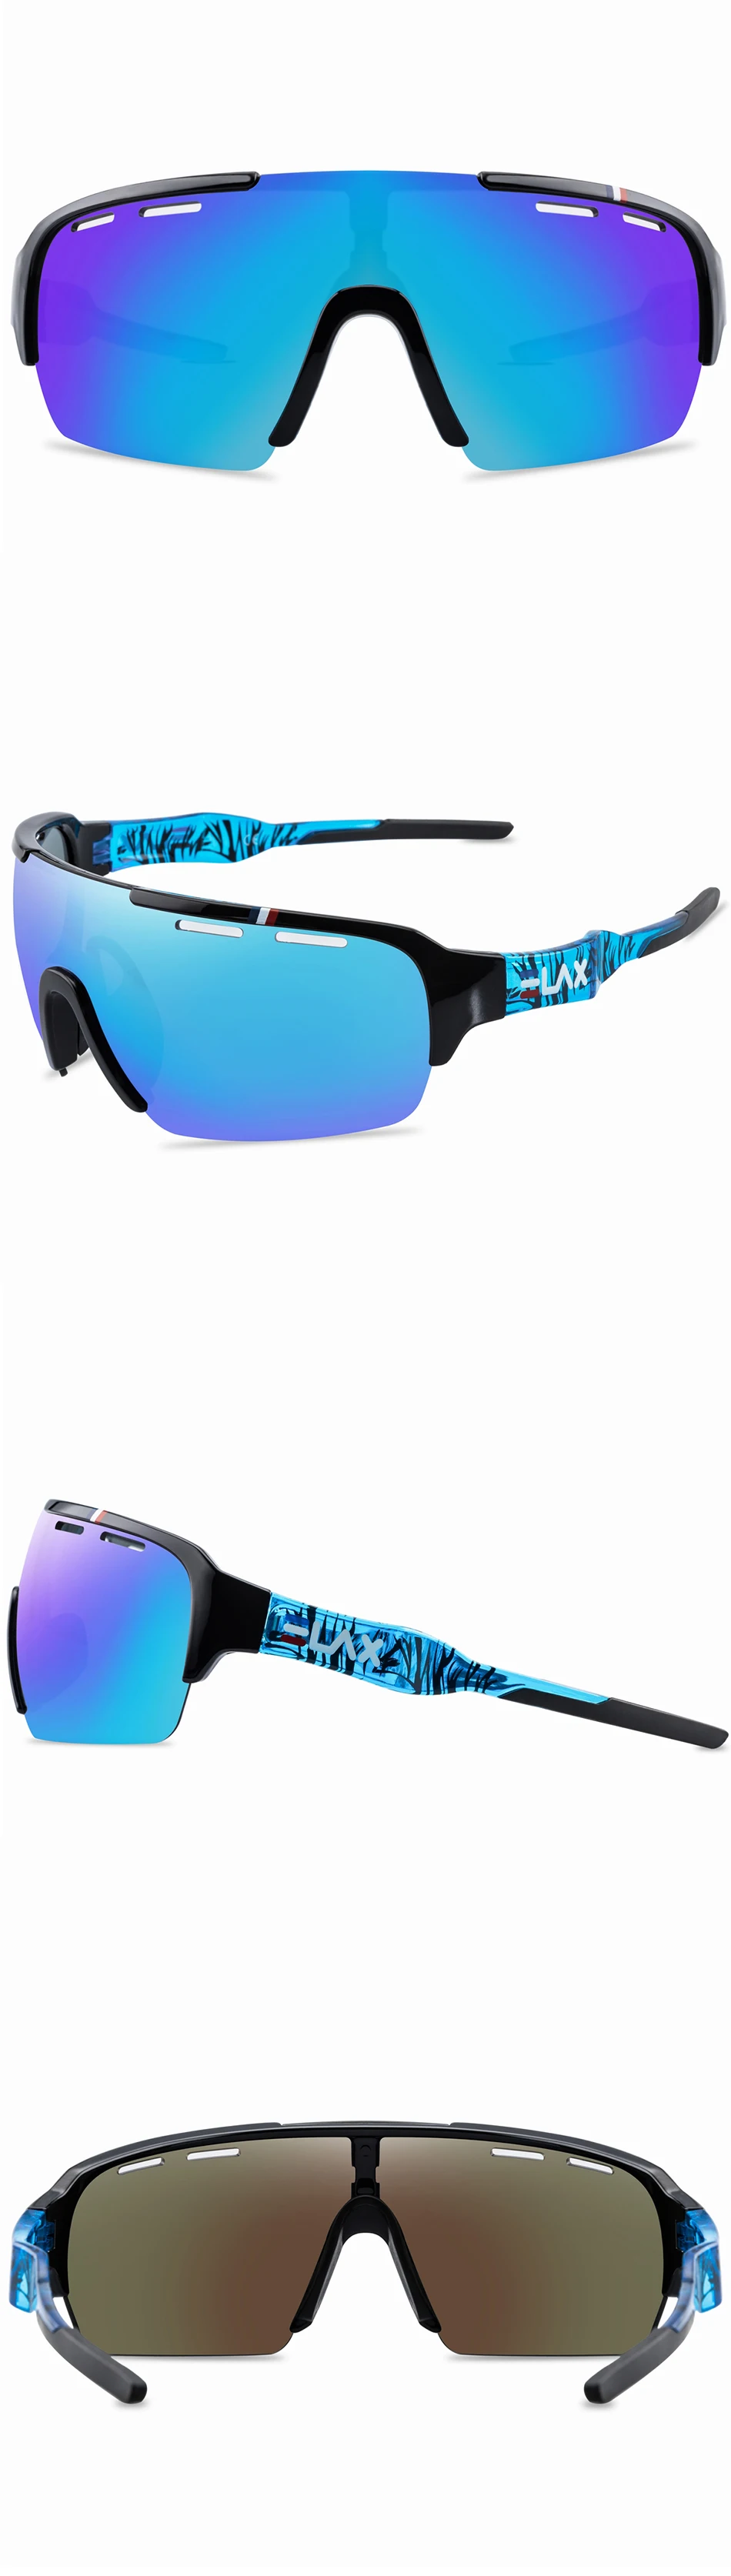 ELAX, новинка, брендовые поляризованные очки для велоспорта, для мужчин и женщин, спортивные, для улицы, солнцезащитные очки для велосипеда, очки для велосипеда, Poc Crave, солнцезащитные очки